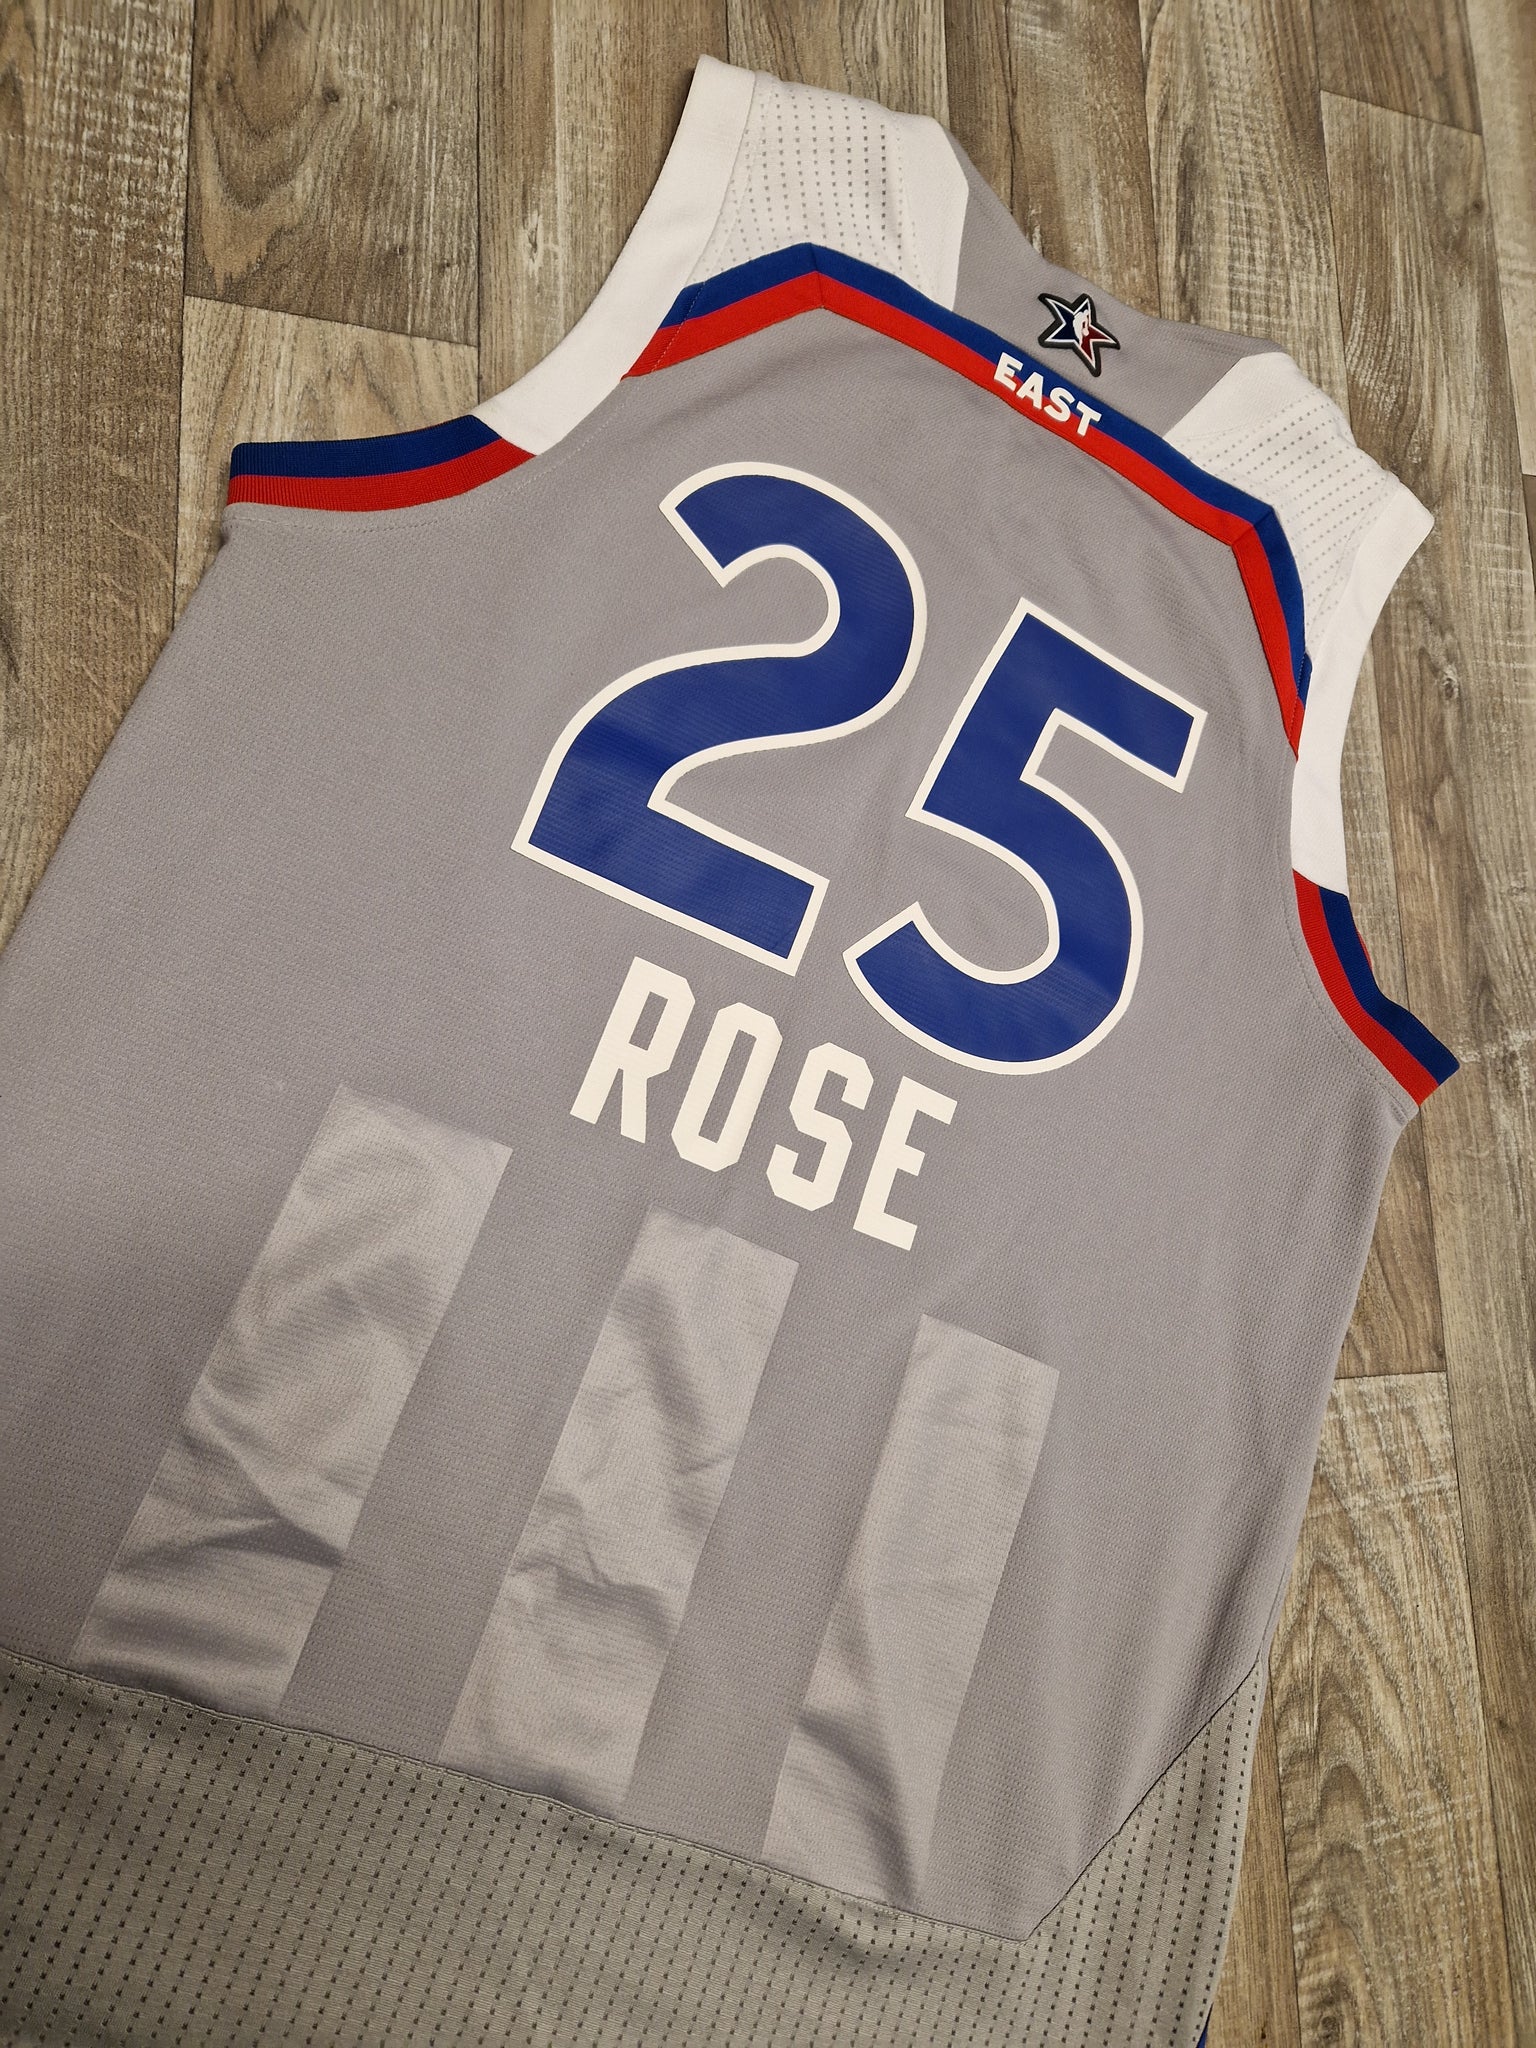 2011 Derrick Rose NBA All Star Jersey Size 52 XL